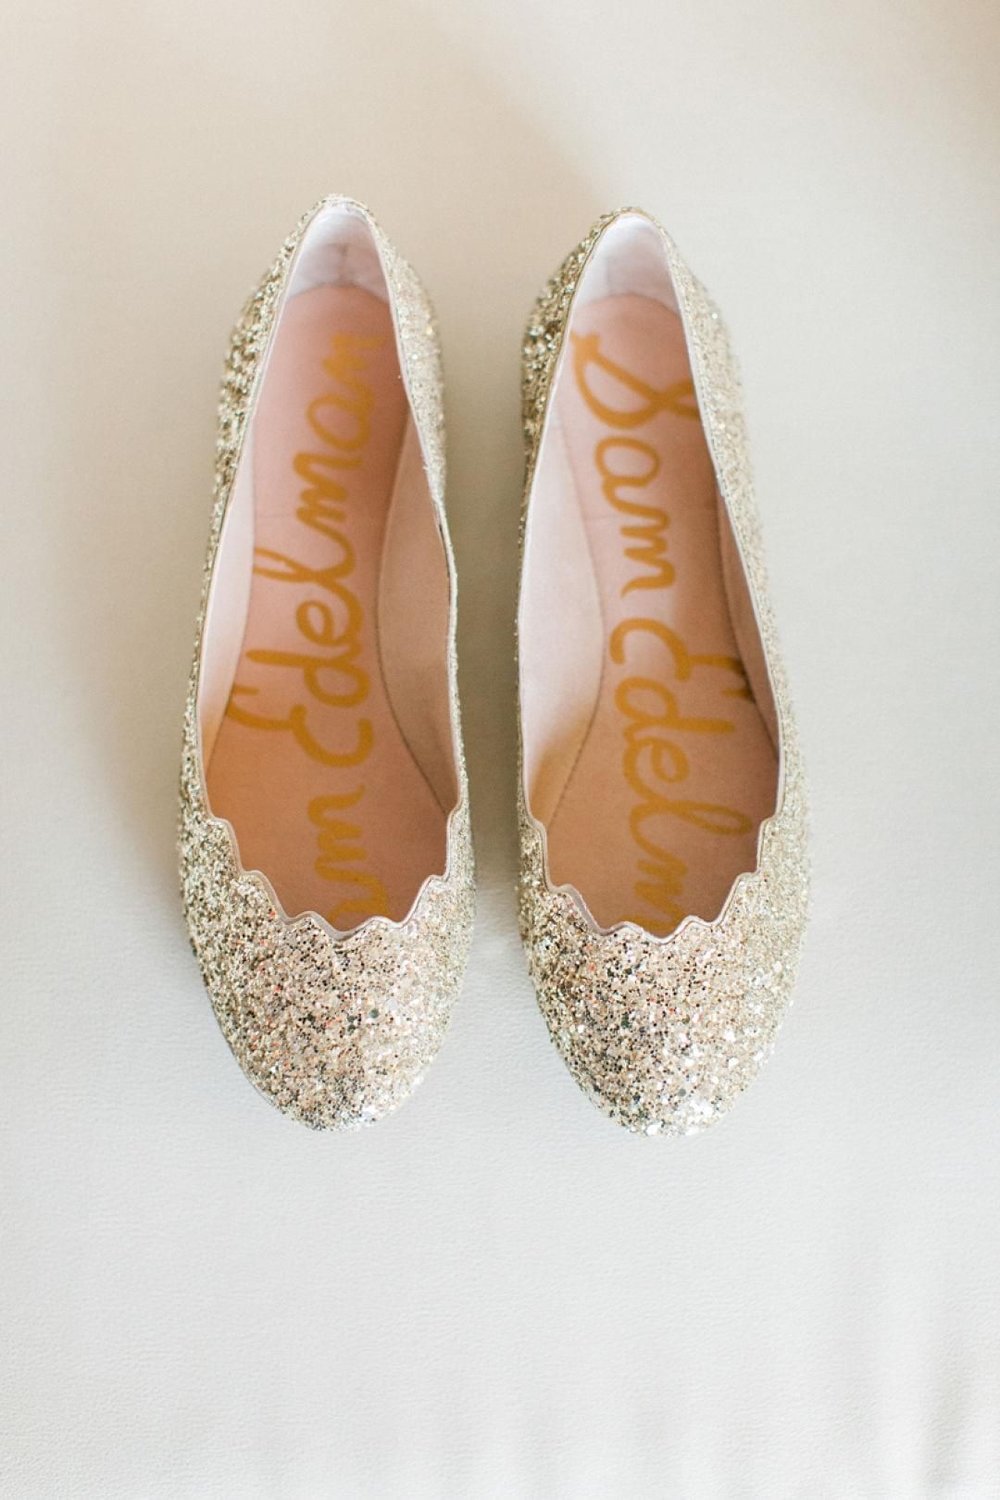 gold ballet flats wedding shoes.jpg